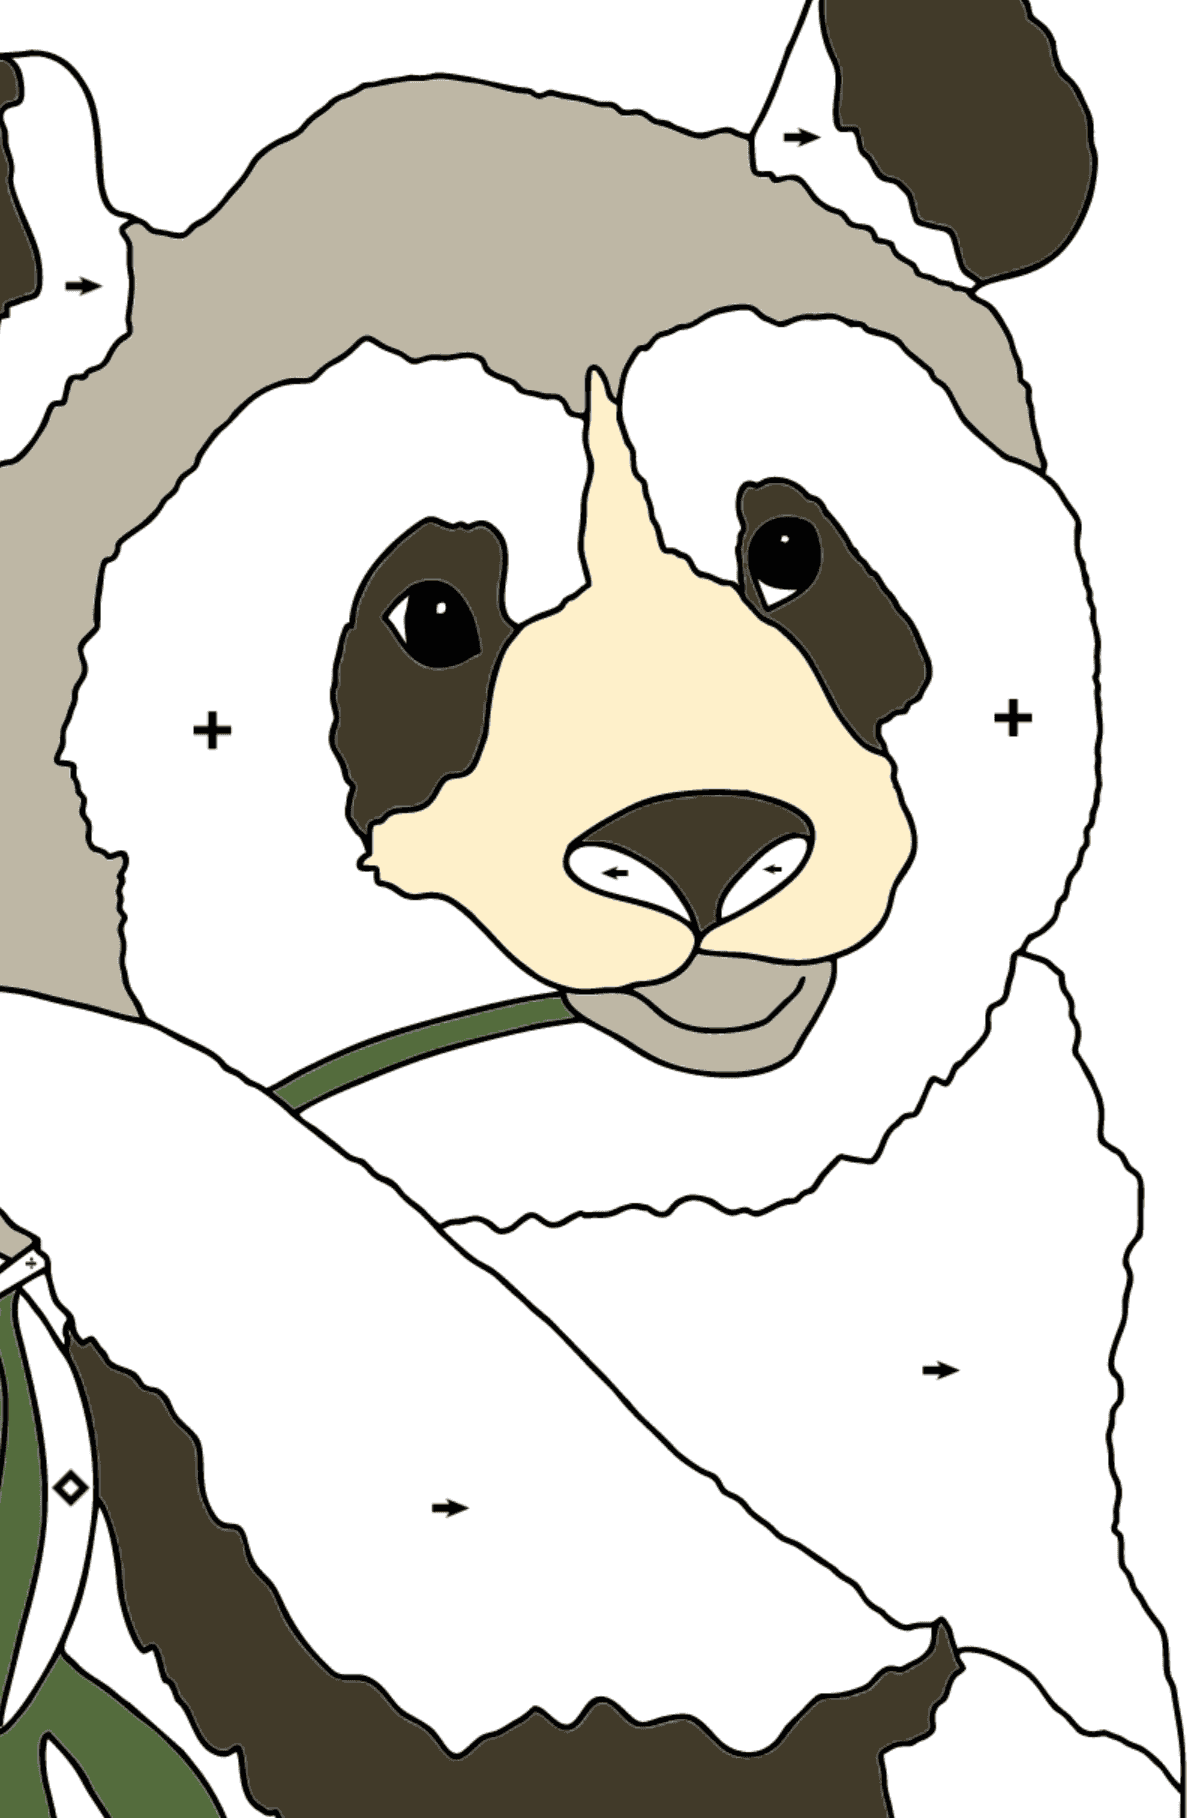 Desenho de panda fofo para colorir (difícil) - Colorir por Símbolos para Crianças